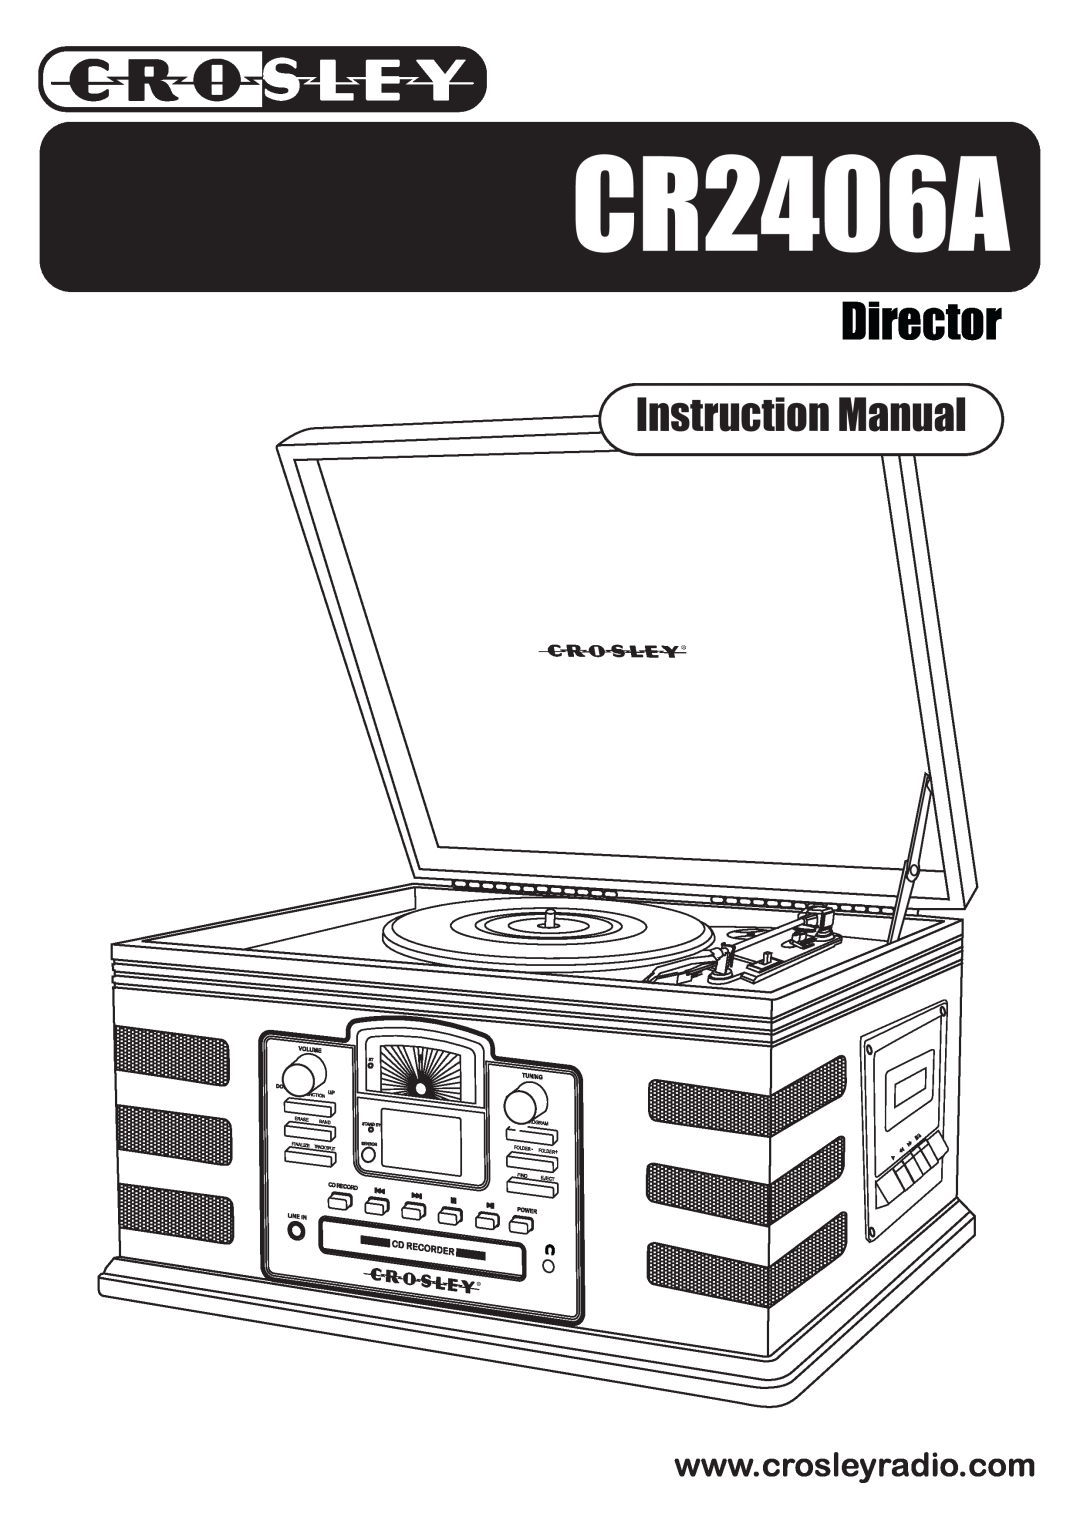 Crosley Radio CR2406A manual +++sw~*y,~vxzsw, pzkljmn, q39, u6 9 - 376w+6 +4 